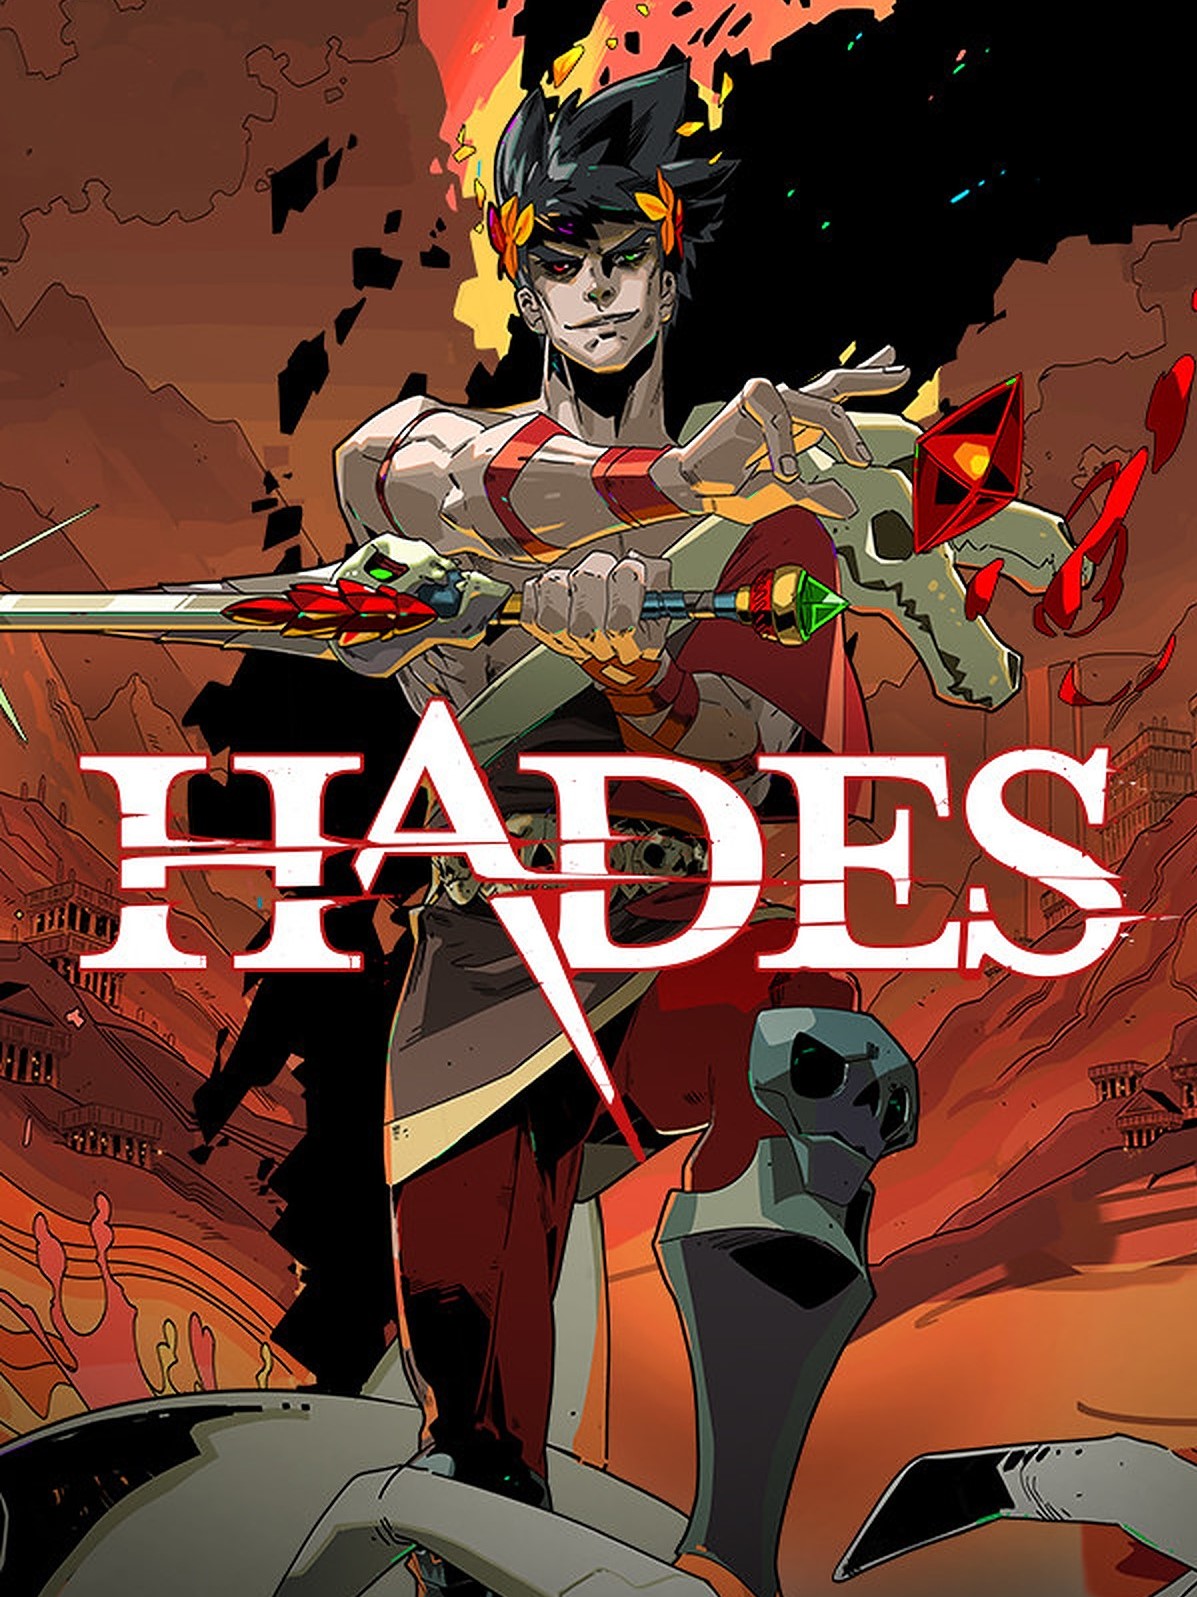 Hades - VGDB - Vídeo Game Data Base